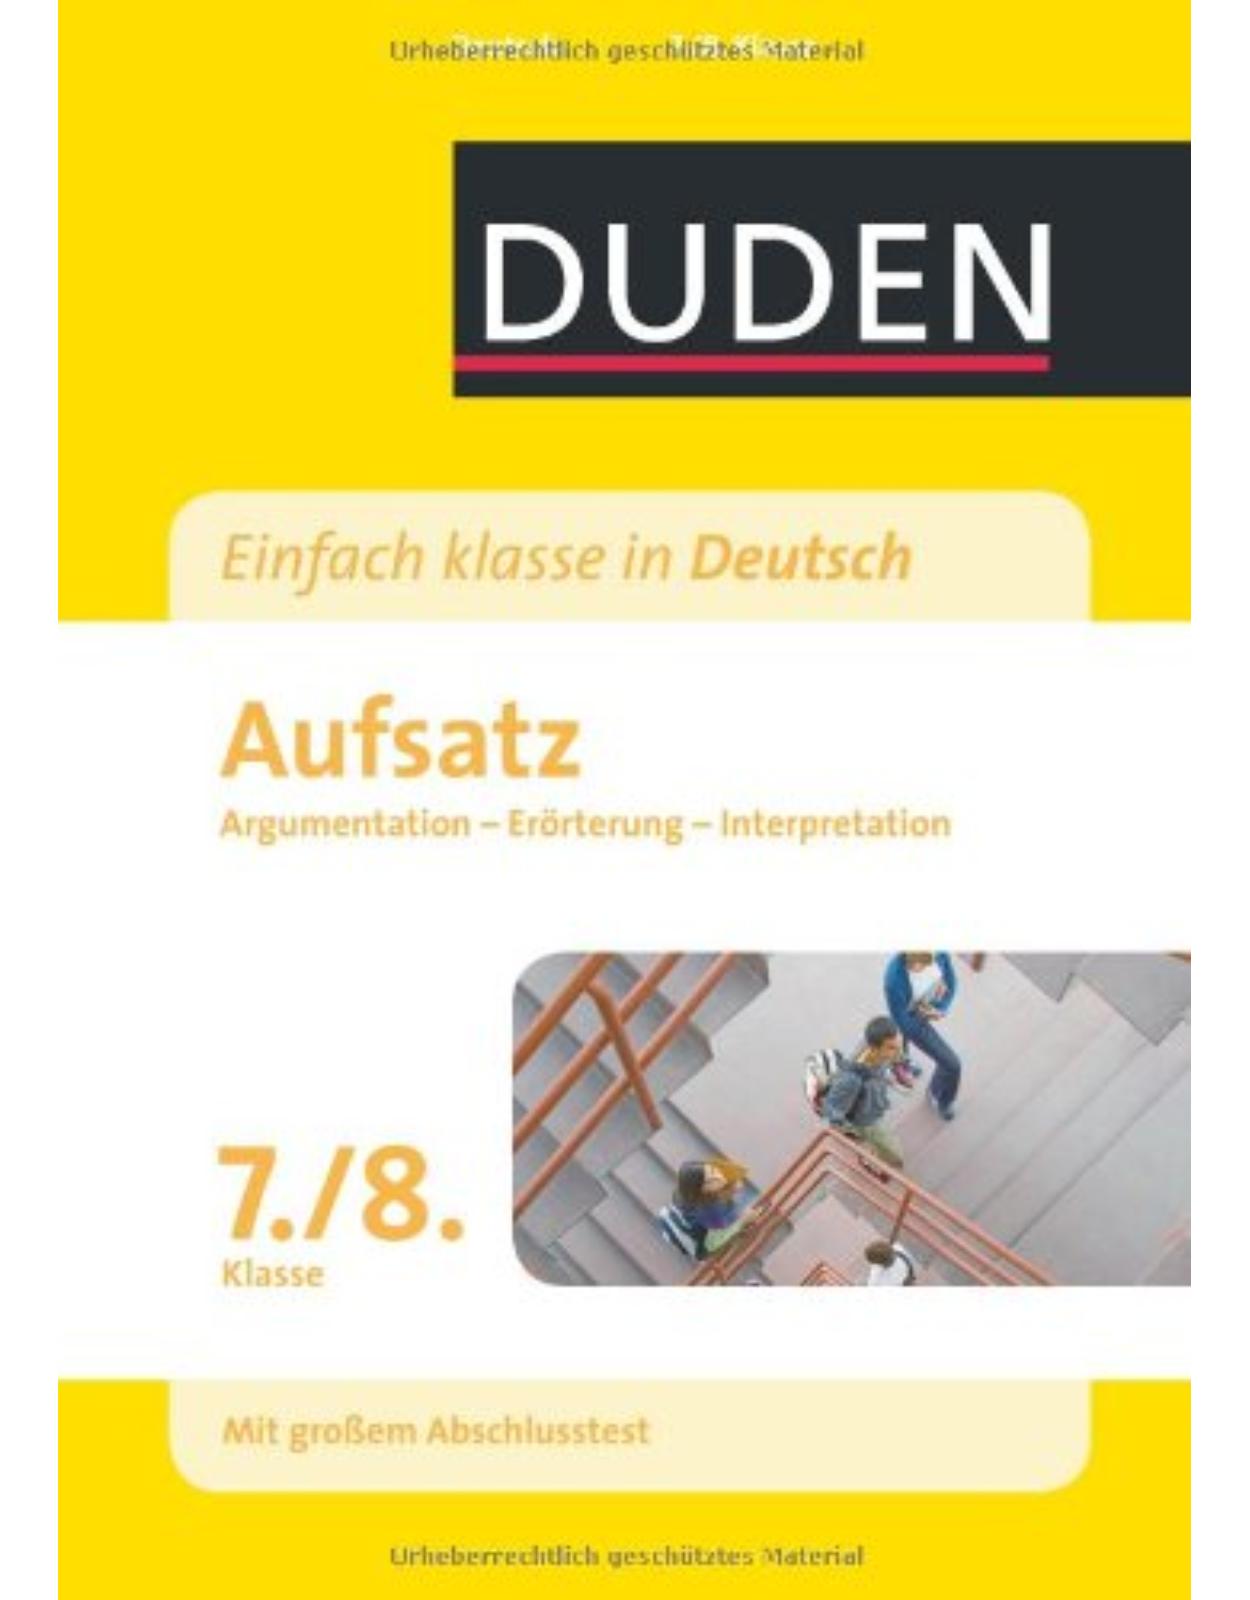 Duden - Einfach klasse in Deutsch - Aufsatz 7./8. Klasse: Argumentation, Erörterung, Interpretation Wissen - Üben - Testen